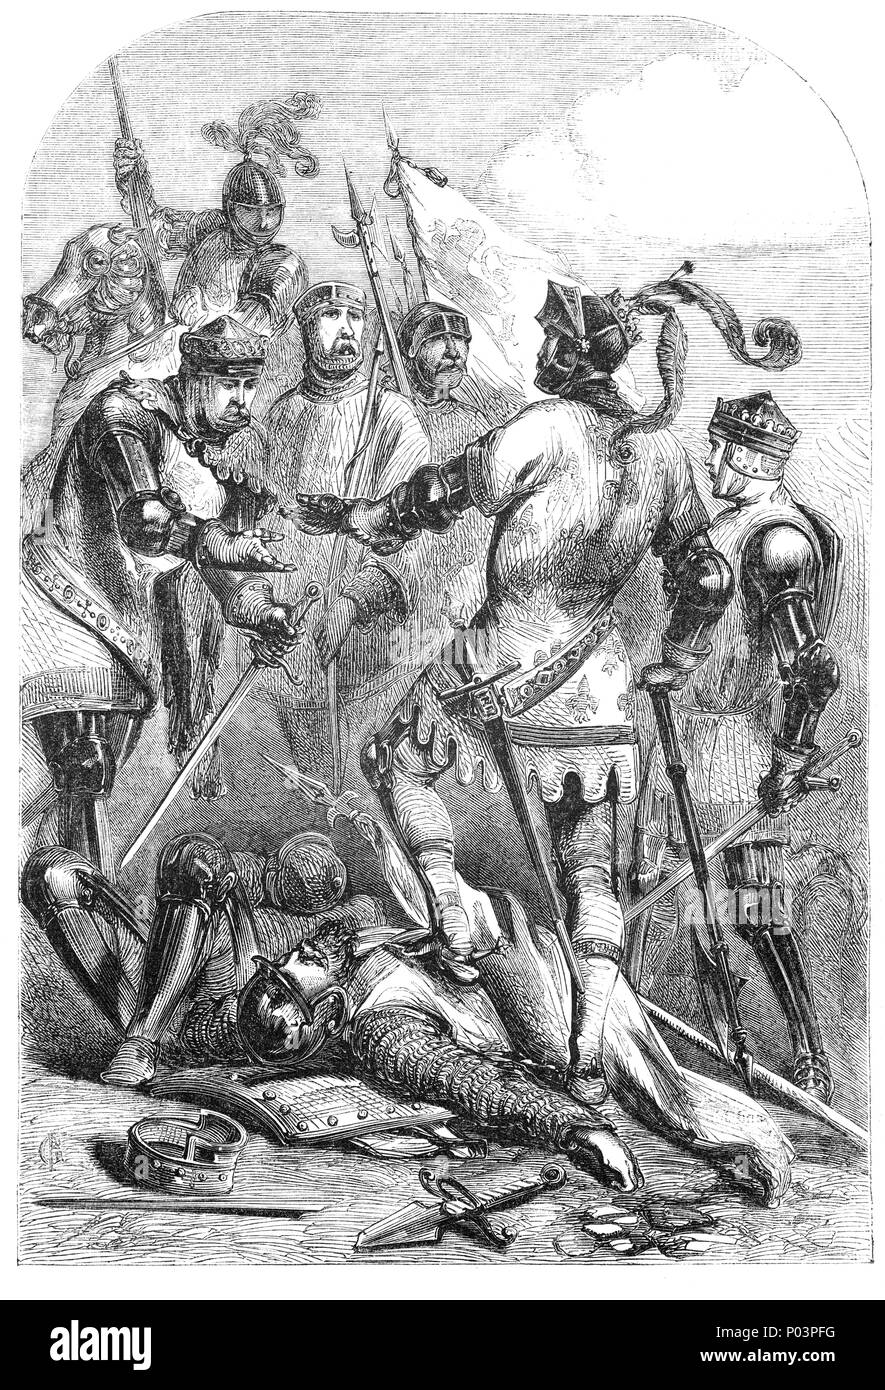 La bataille de Poitiers a eu lieu le 19 septembre 1356 à Nouaillé, près de la ville de Poitiers en Aquitaine, dans l'ouest de la France. Une armée, dont de nombreux anciens combattants de Crécy, dirigé par le Prince Noir, défait une plus grande armée Françaises et alliées menées par le roi Jean II de France, menant à la capture du roi, son fils, et une grande partie de la noblesse française. C'était la deuxième grande victoire anglaise de la belle phase de la guerre de Cent Ans. Poitiers a eu lieu dix ans après la bataille de Crécy (la première grande victoire), et environ un demi-siècle avant la troisième, la bataille d'Azincourt (1415). Banque D'Images